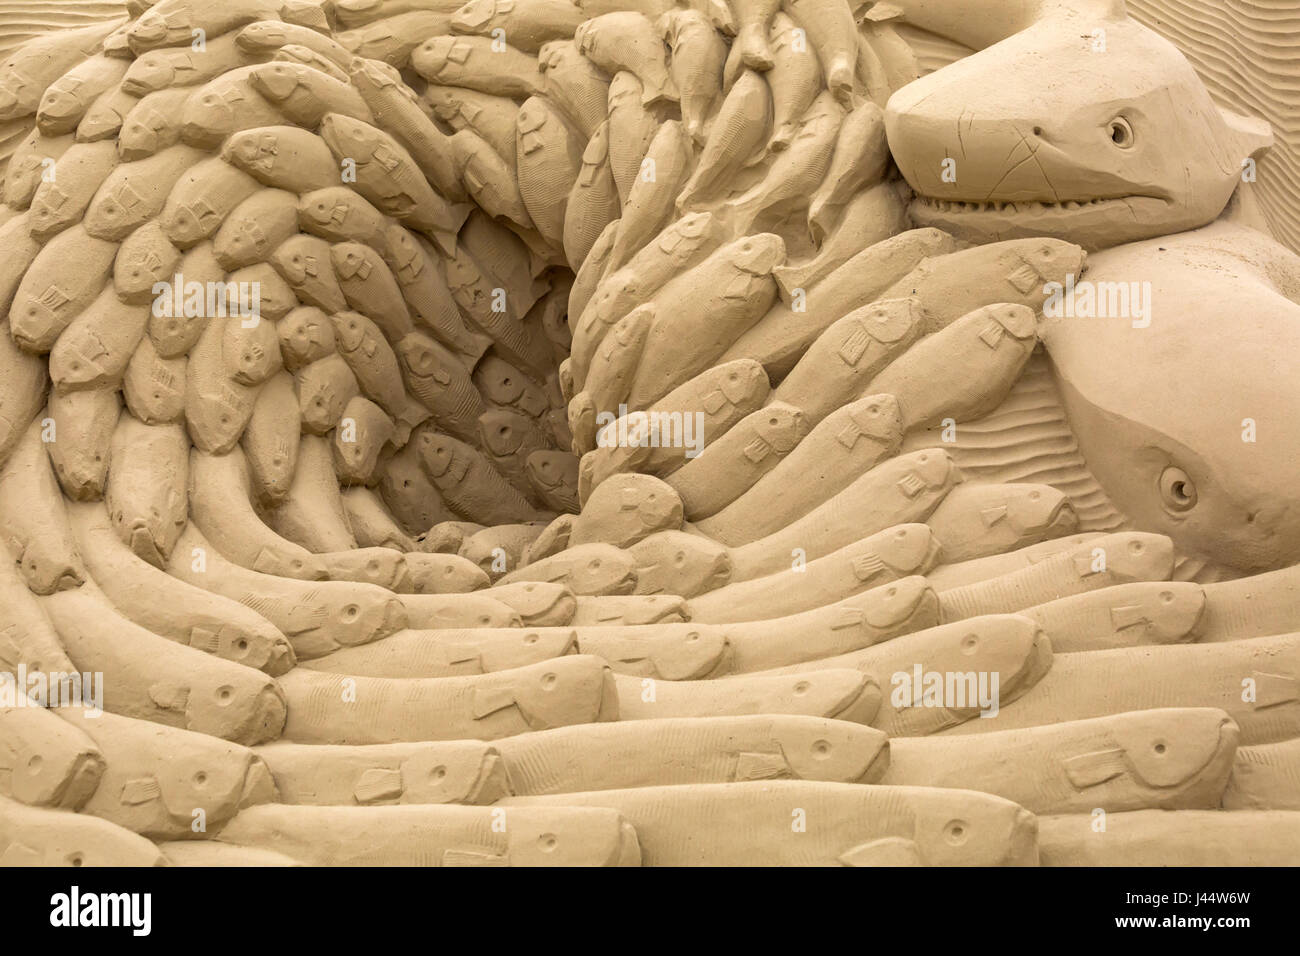 La sculpture de sable Blue Planet par les sculpteurs Wilfred Stiger et Edith Van Der Wettering, une des sculptures de sable de Sandworld, Weymouth, Dorset UK Banque D'Images